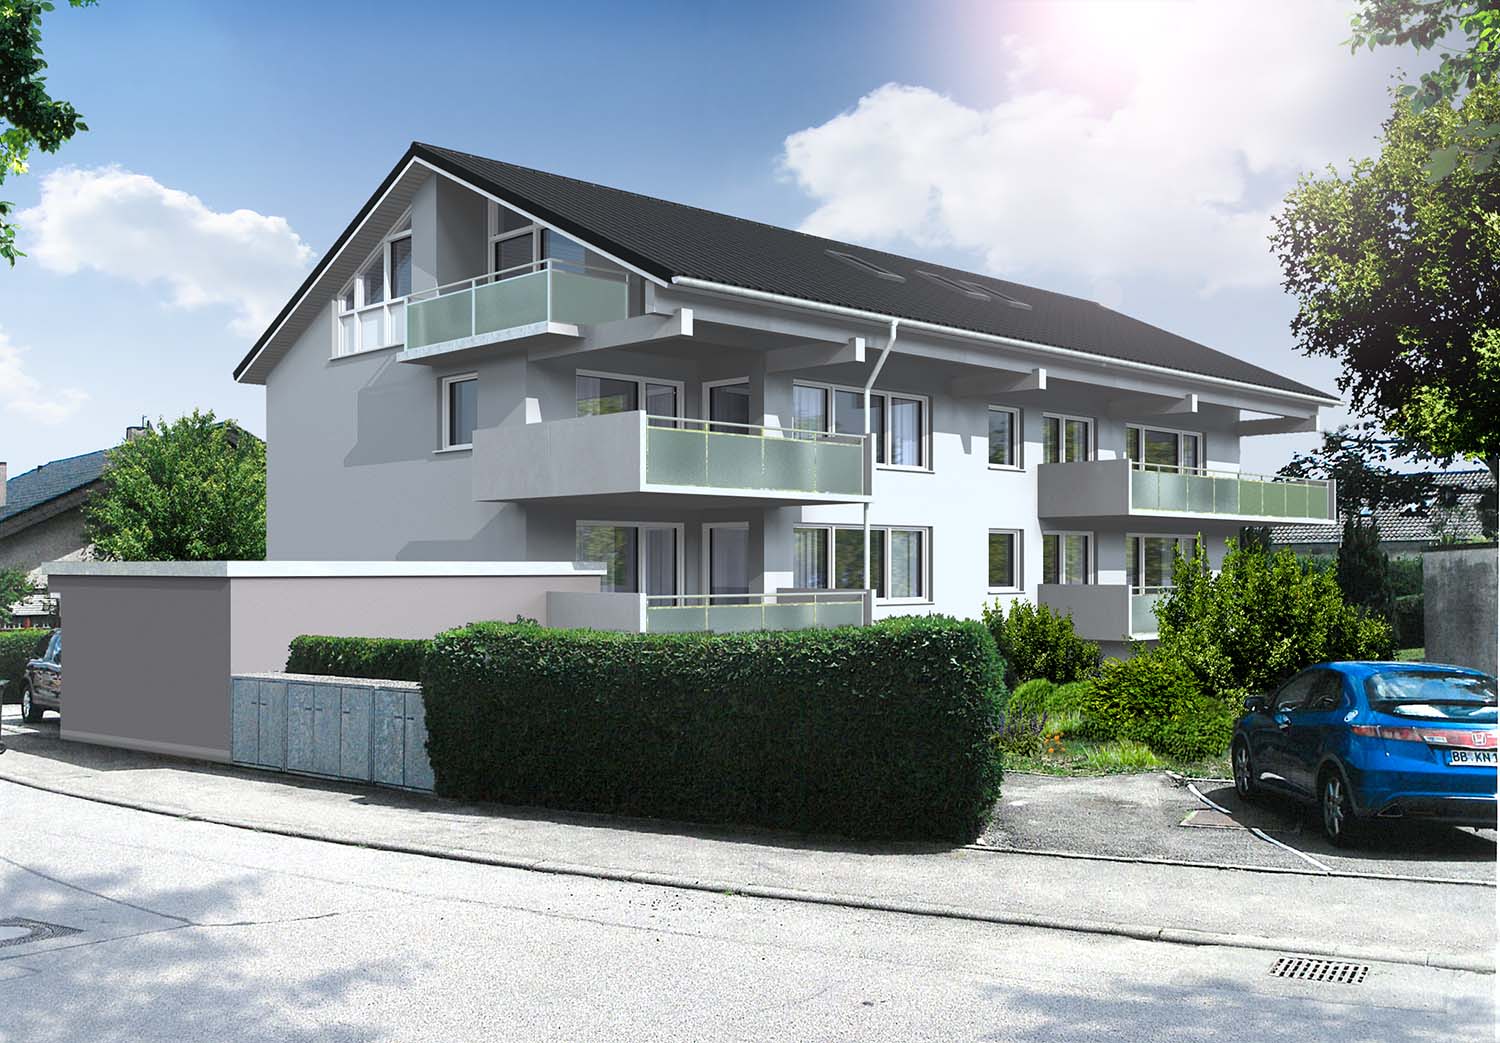 Vorher-Nachher Architekturvisualisierung mit Integration in die Bestandsbilder einer Fassadensanierung  eines Mehrfamilienhauses, Königsbergerstraße, Ehningen für Architektur + Planen S C H E D L  GmbH (Jahr 2017). Hier die Vorher-Variante.